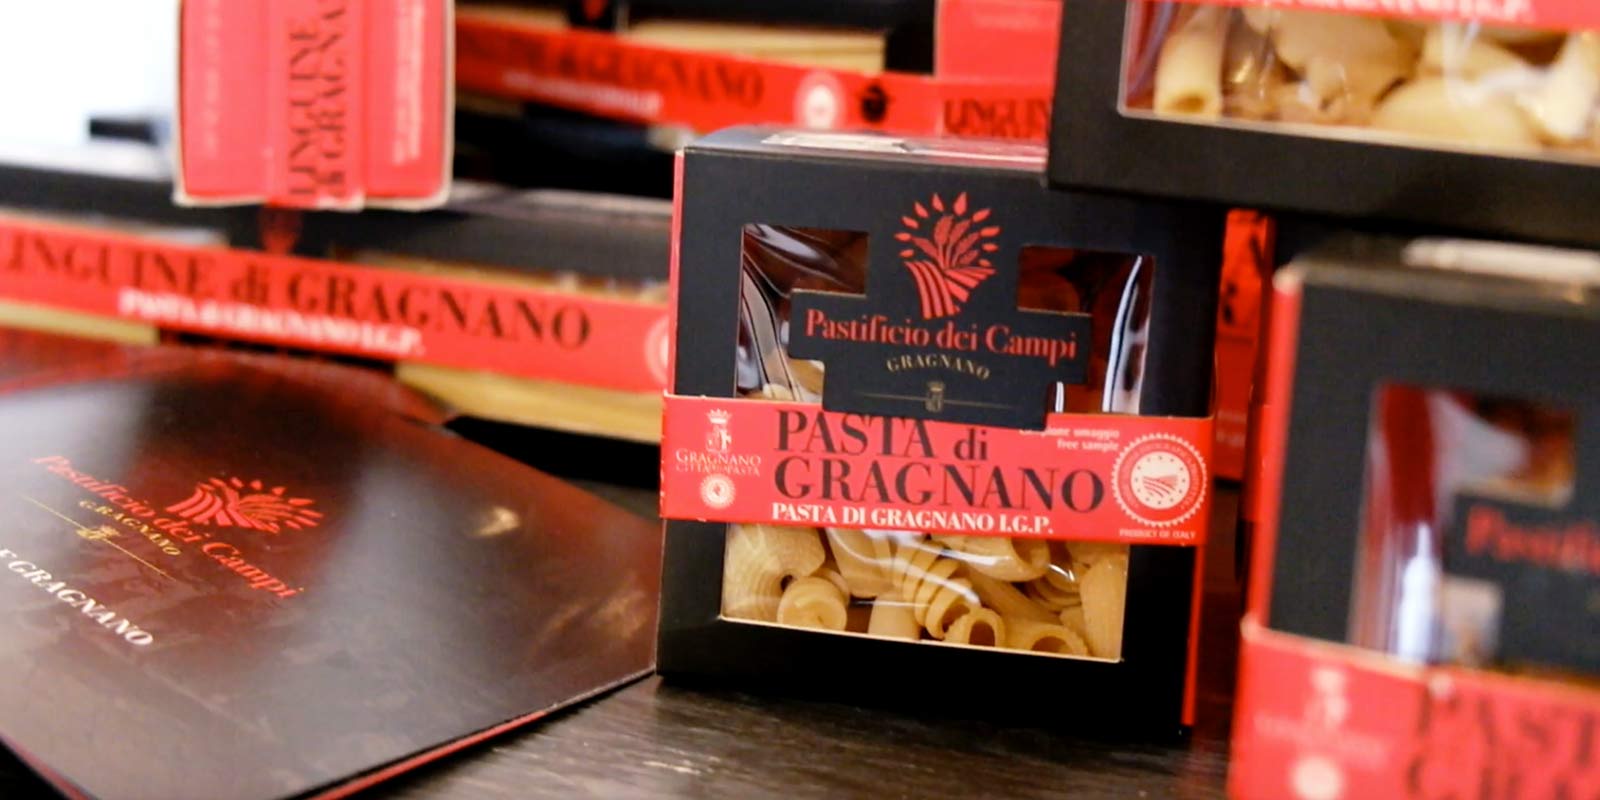 Pastifico dei Campi - Pasta di Gragnano IGP Pastificio dei Campi produserer noen italienske klassikere og noen originale kreasjoner. Pastaen er laget av 100 % italiensk durumhvetegryn og ekstrudert med bronseformer.